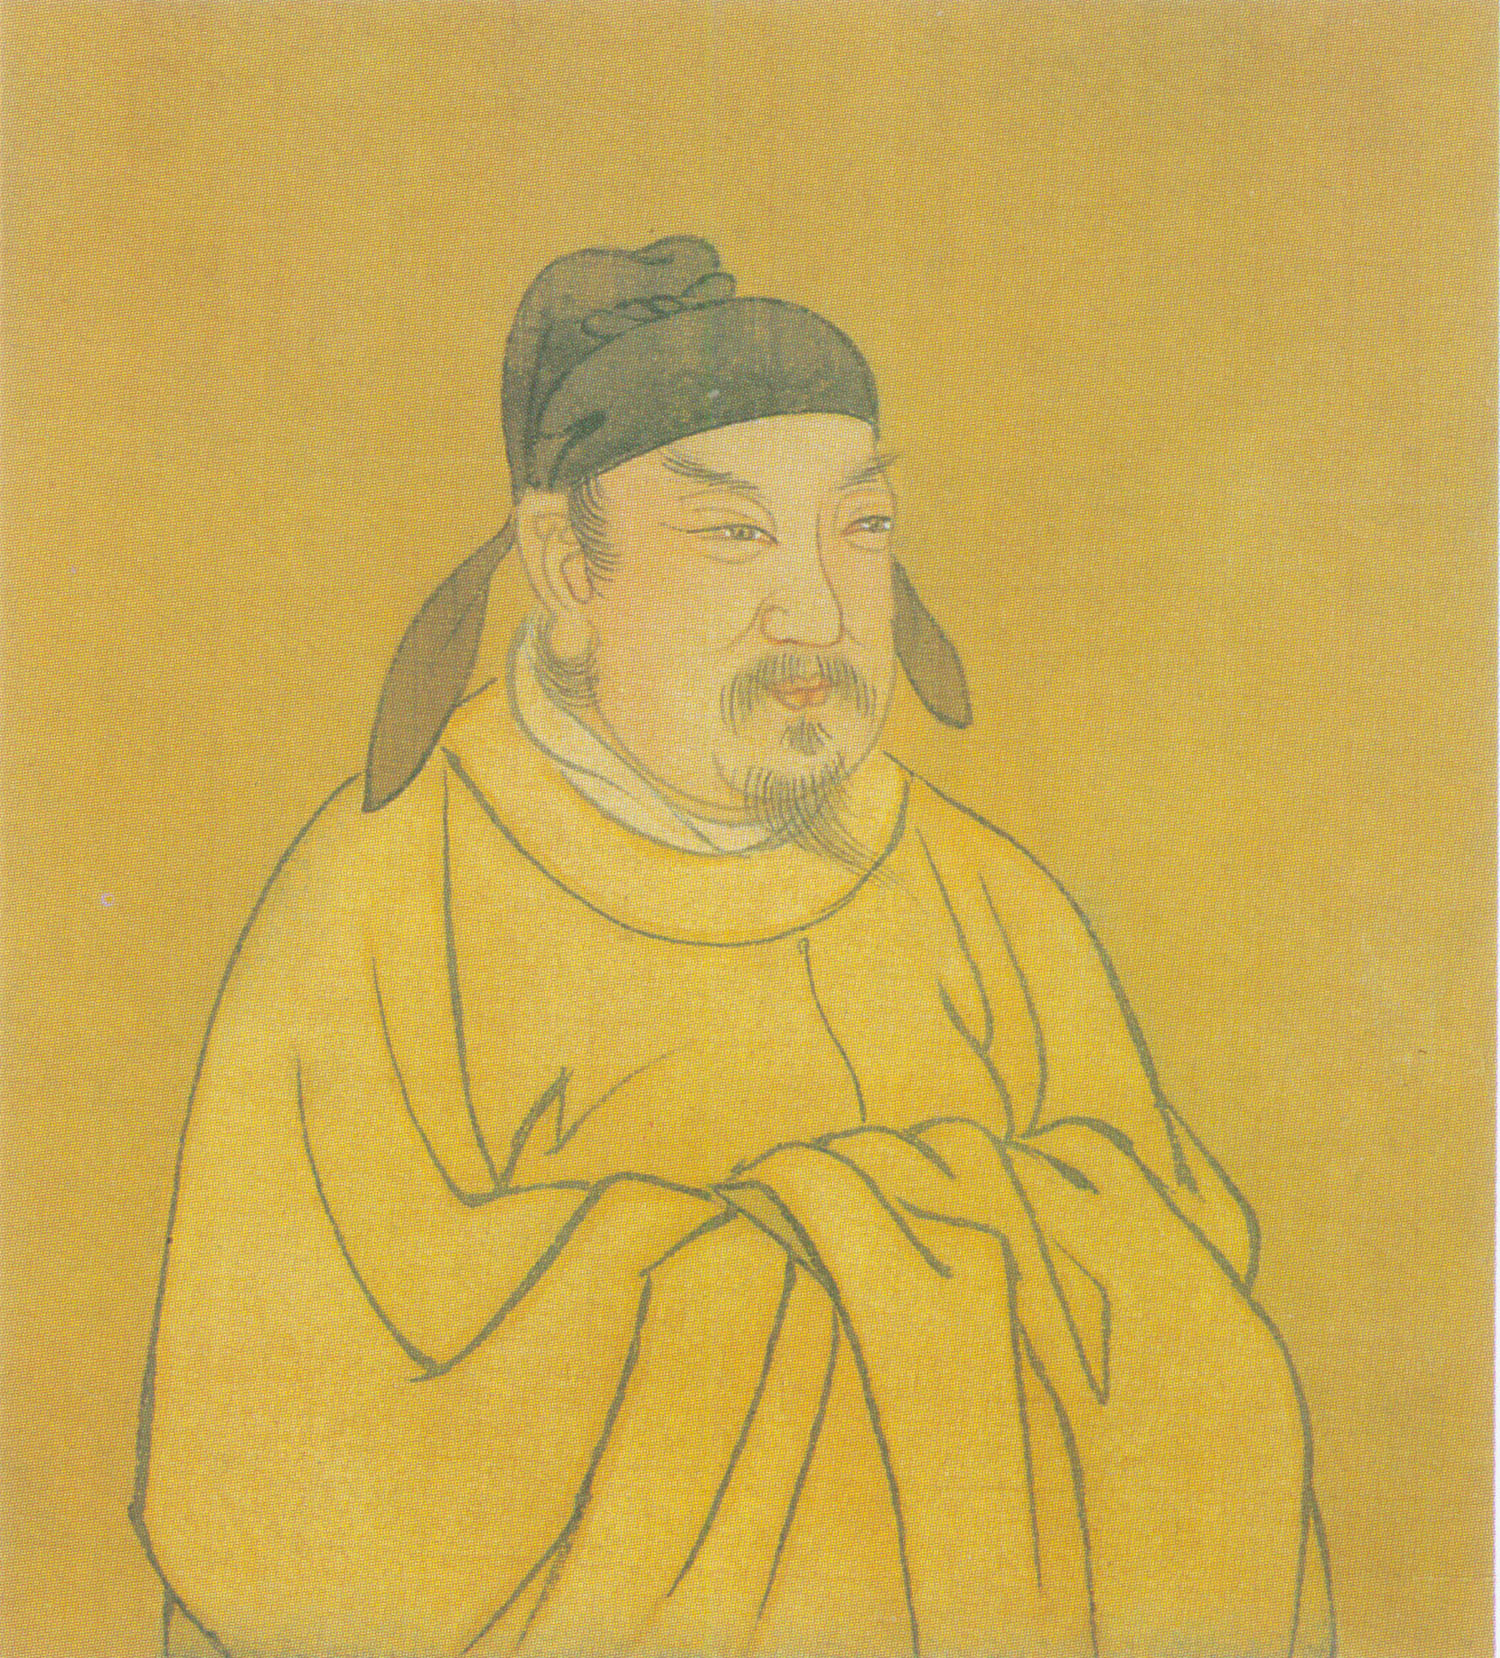 Chân dung của Trần Vũ Đế Trần Bá Tiên, người thời Thanh vẽ. (Ảnh: Tài sản công)